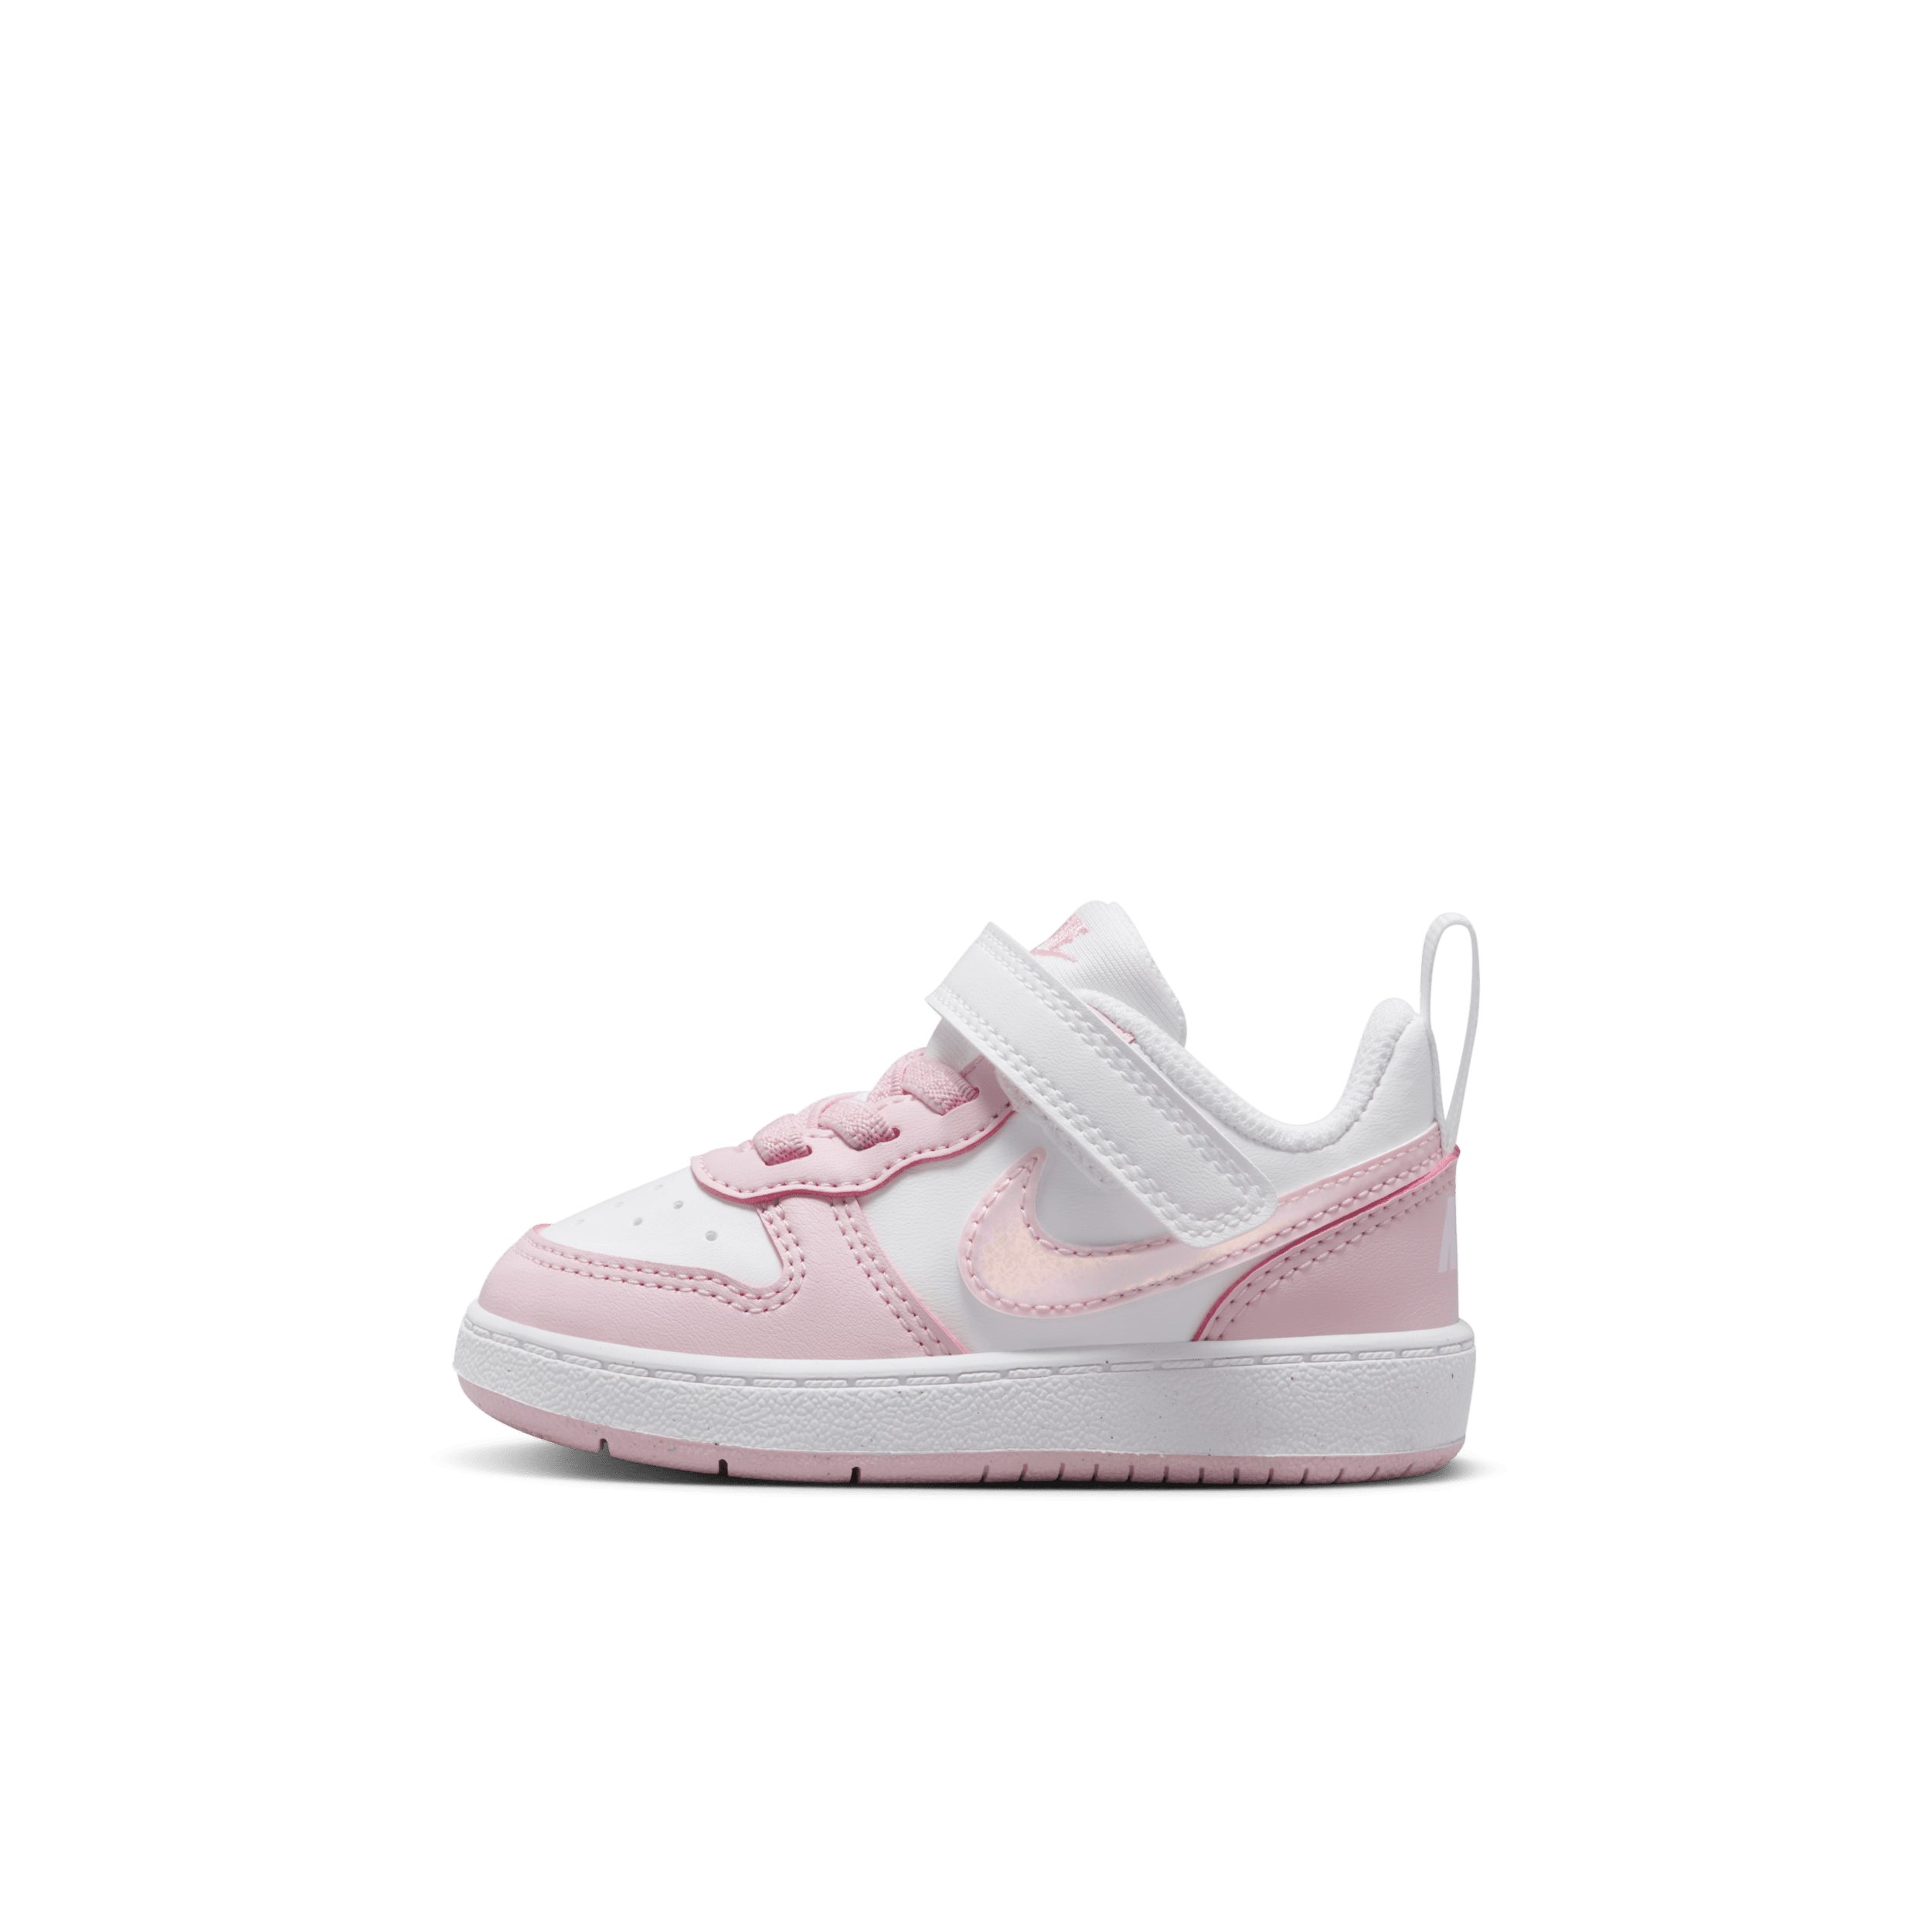 Nike Court Borough Low Recraft schoenen voor baby's/peuters - Wit